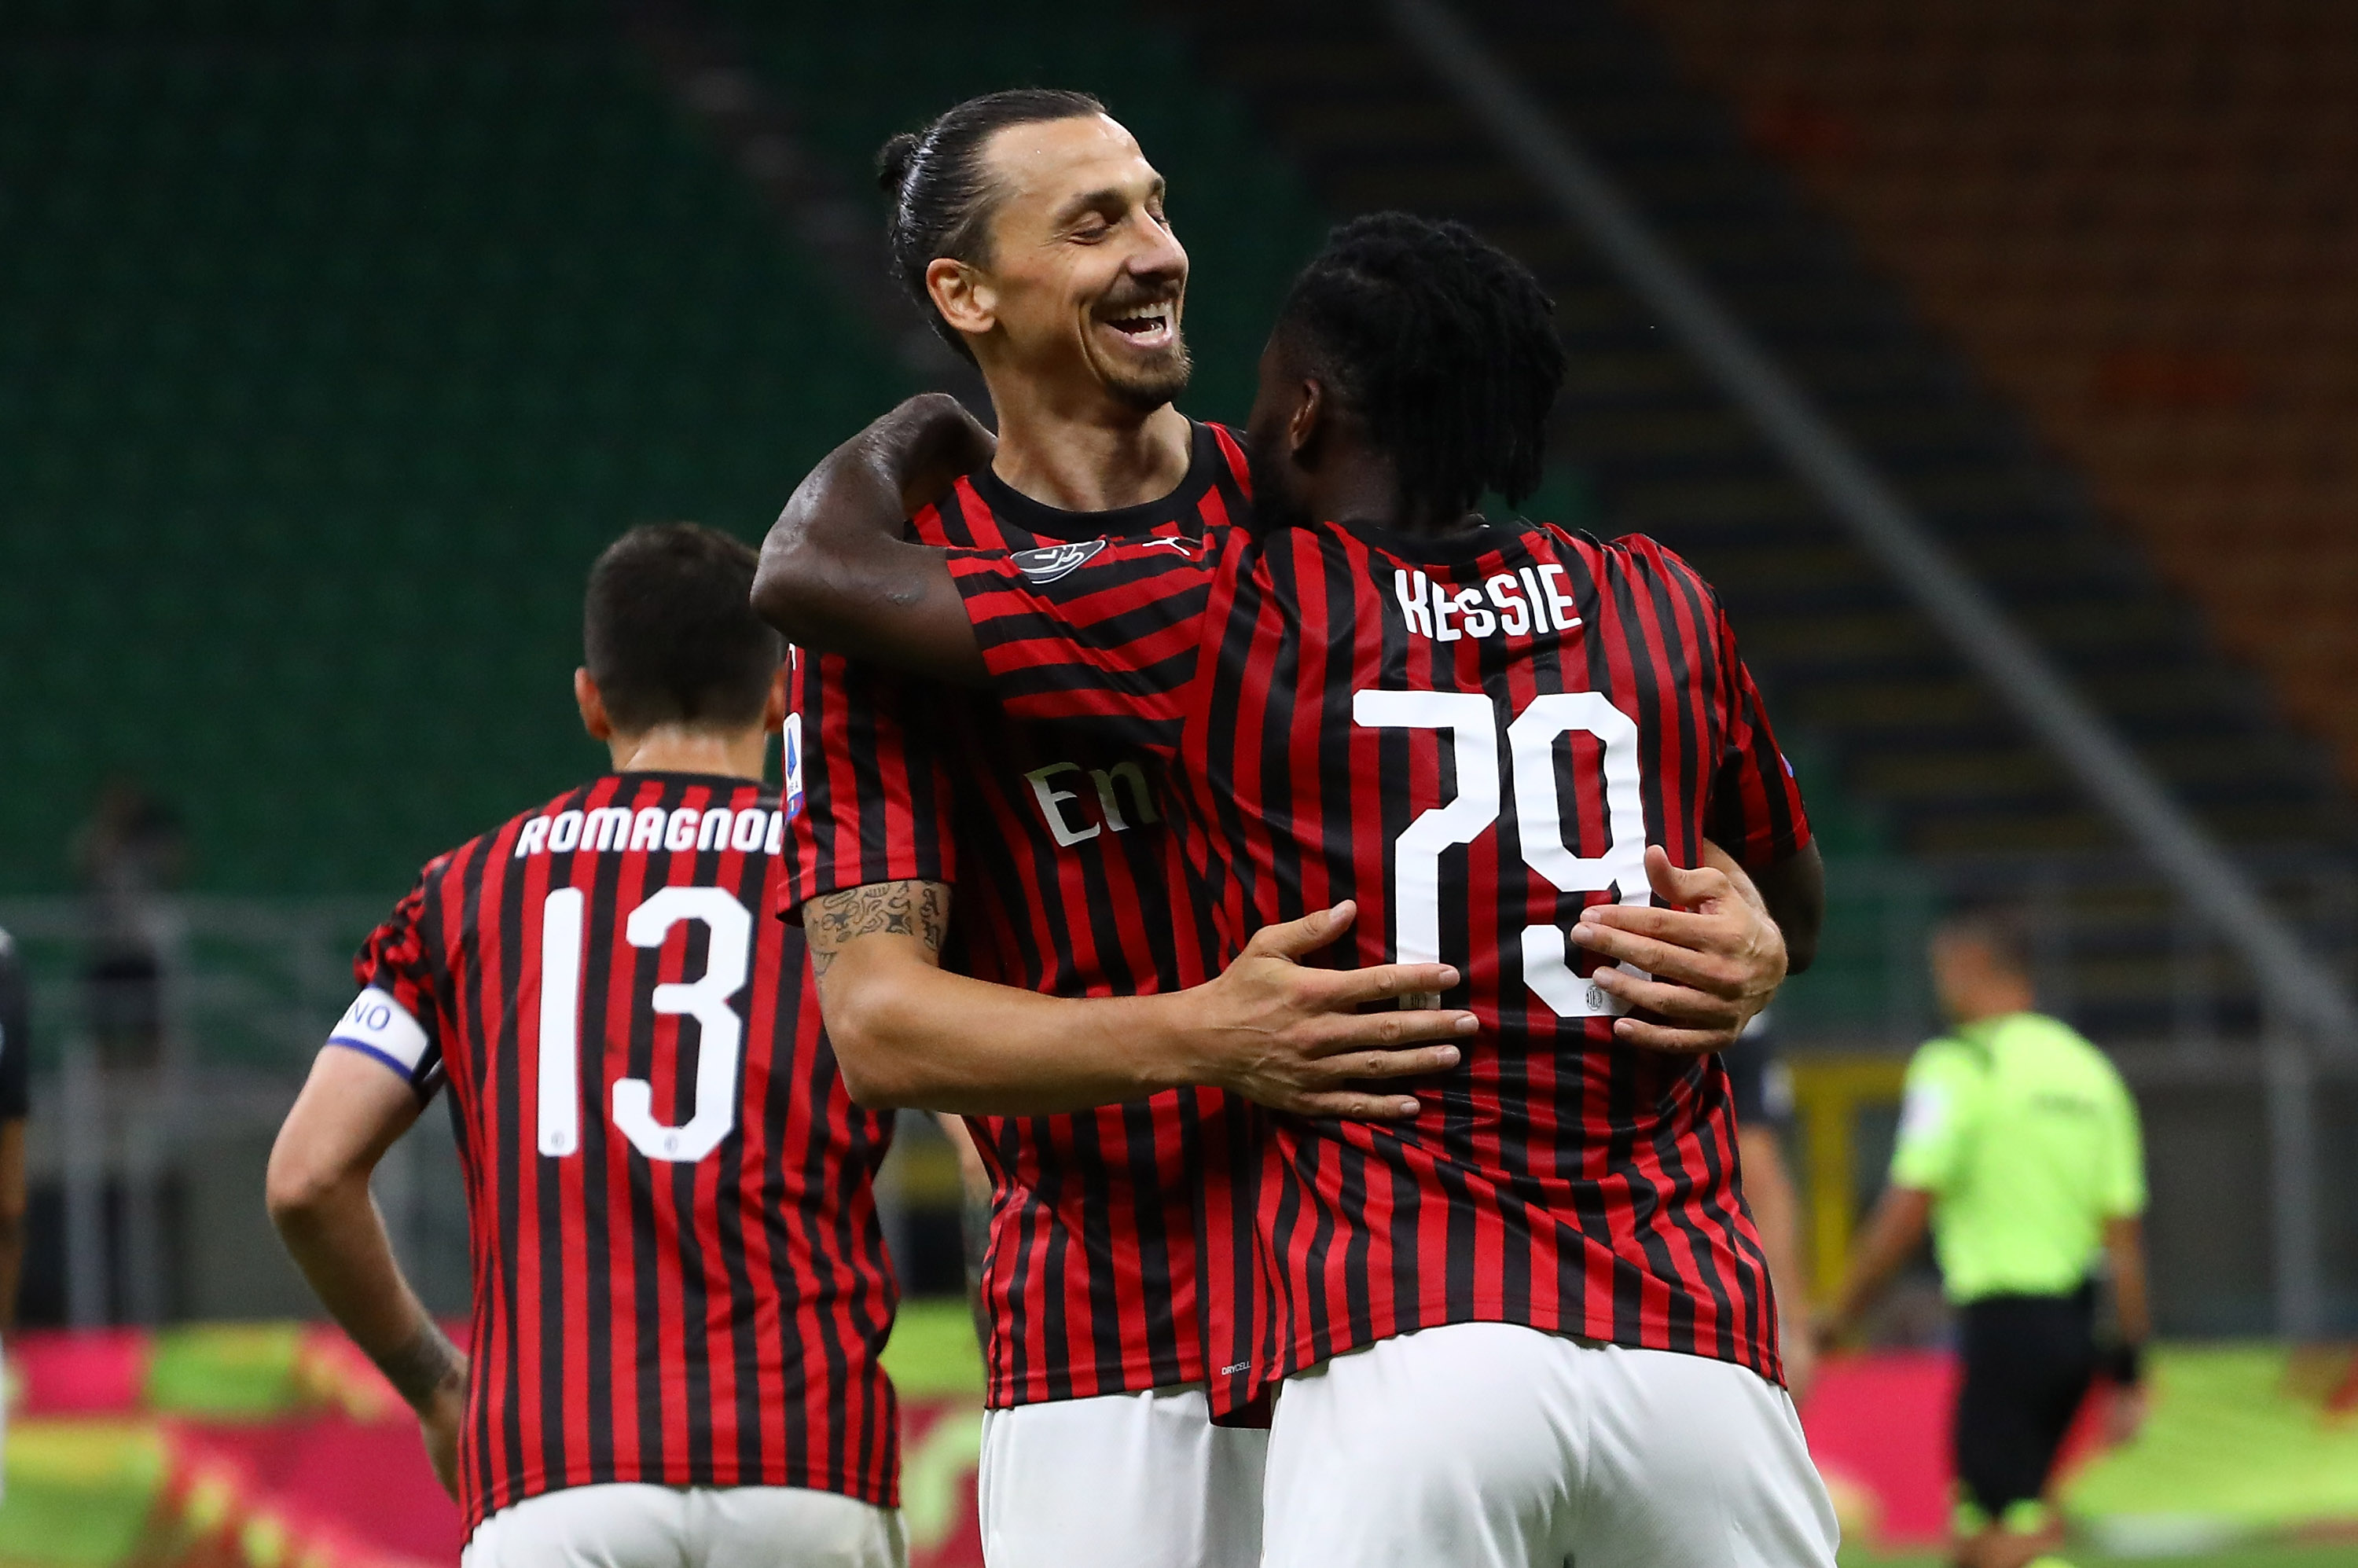 Zlatan Ibrahimovic a dat startul revenirii lui AC Milan cu Juventus! ”Sunt președinte, antrenor și jucător aici”